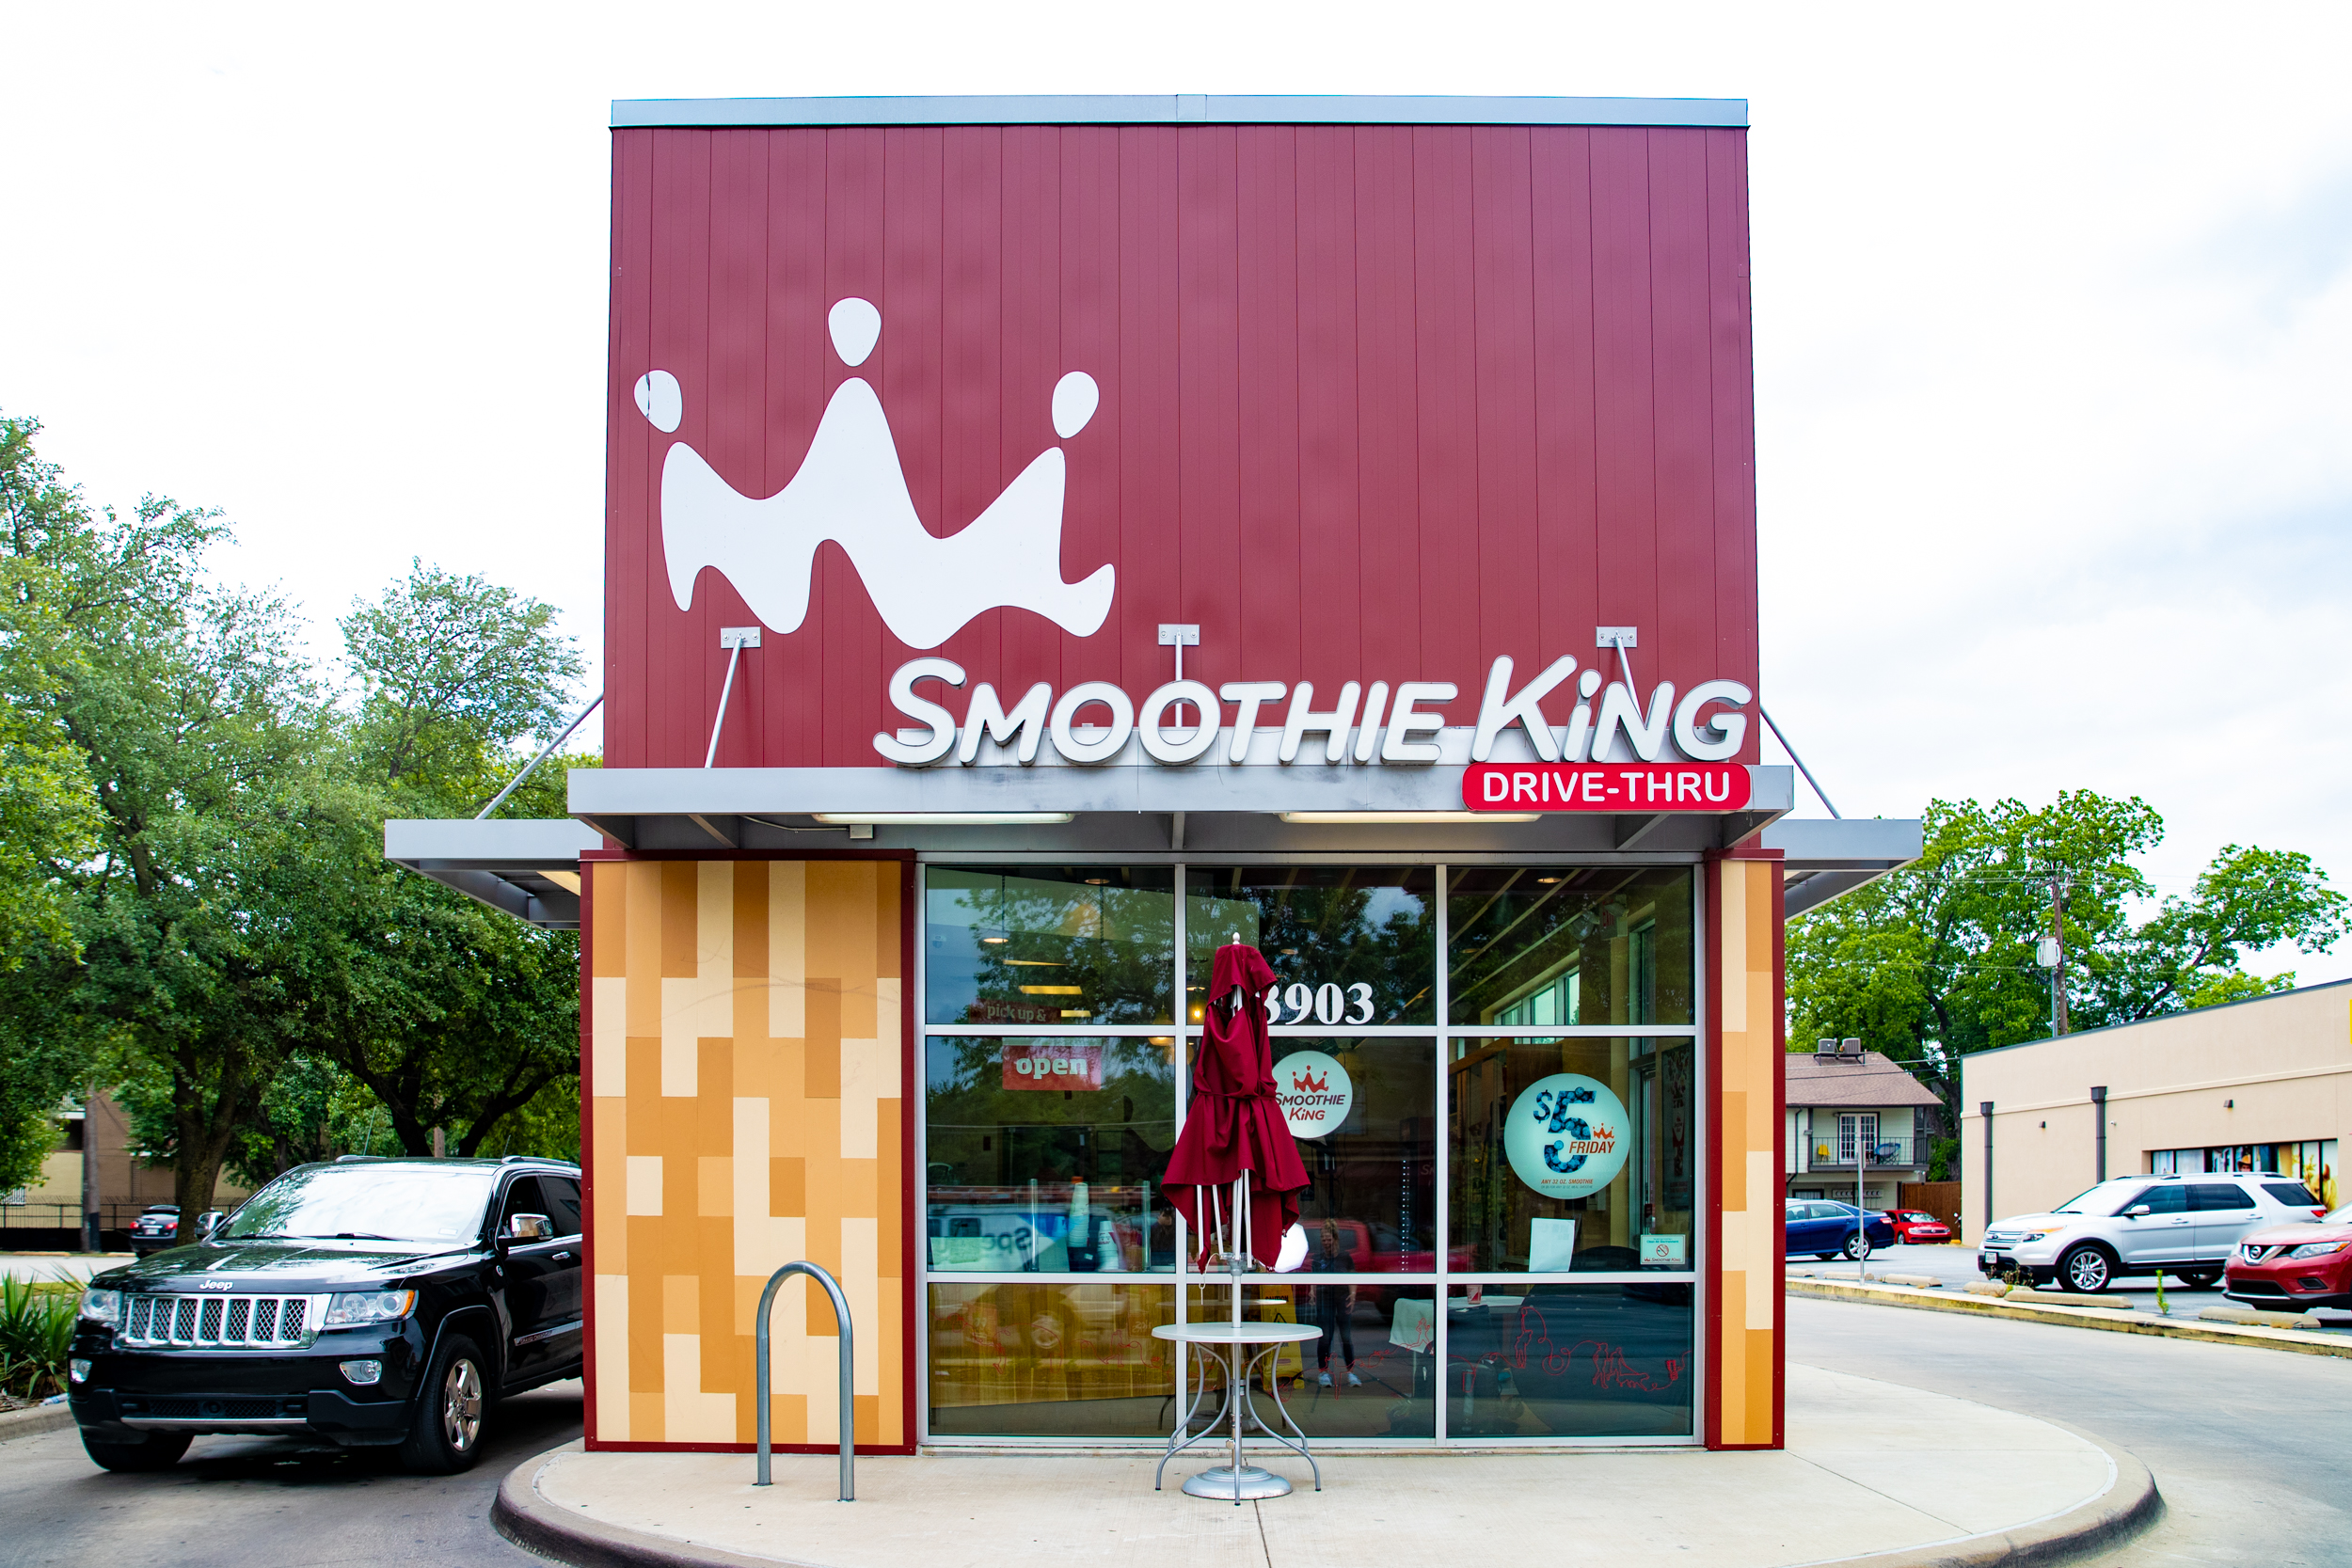 Smoothie King: Houston, Texas expansion.